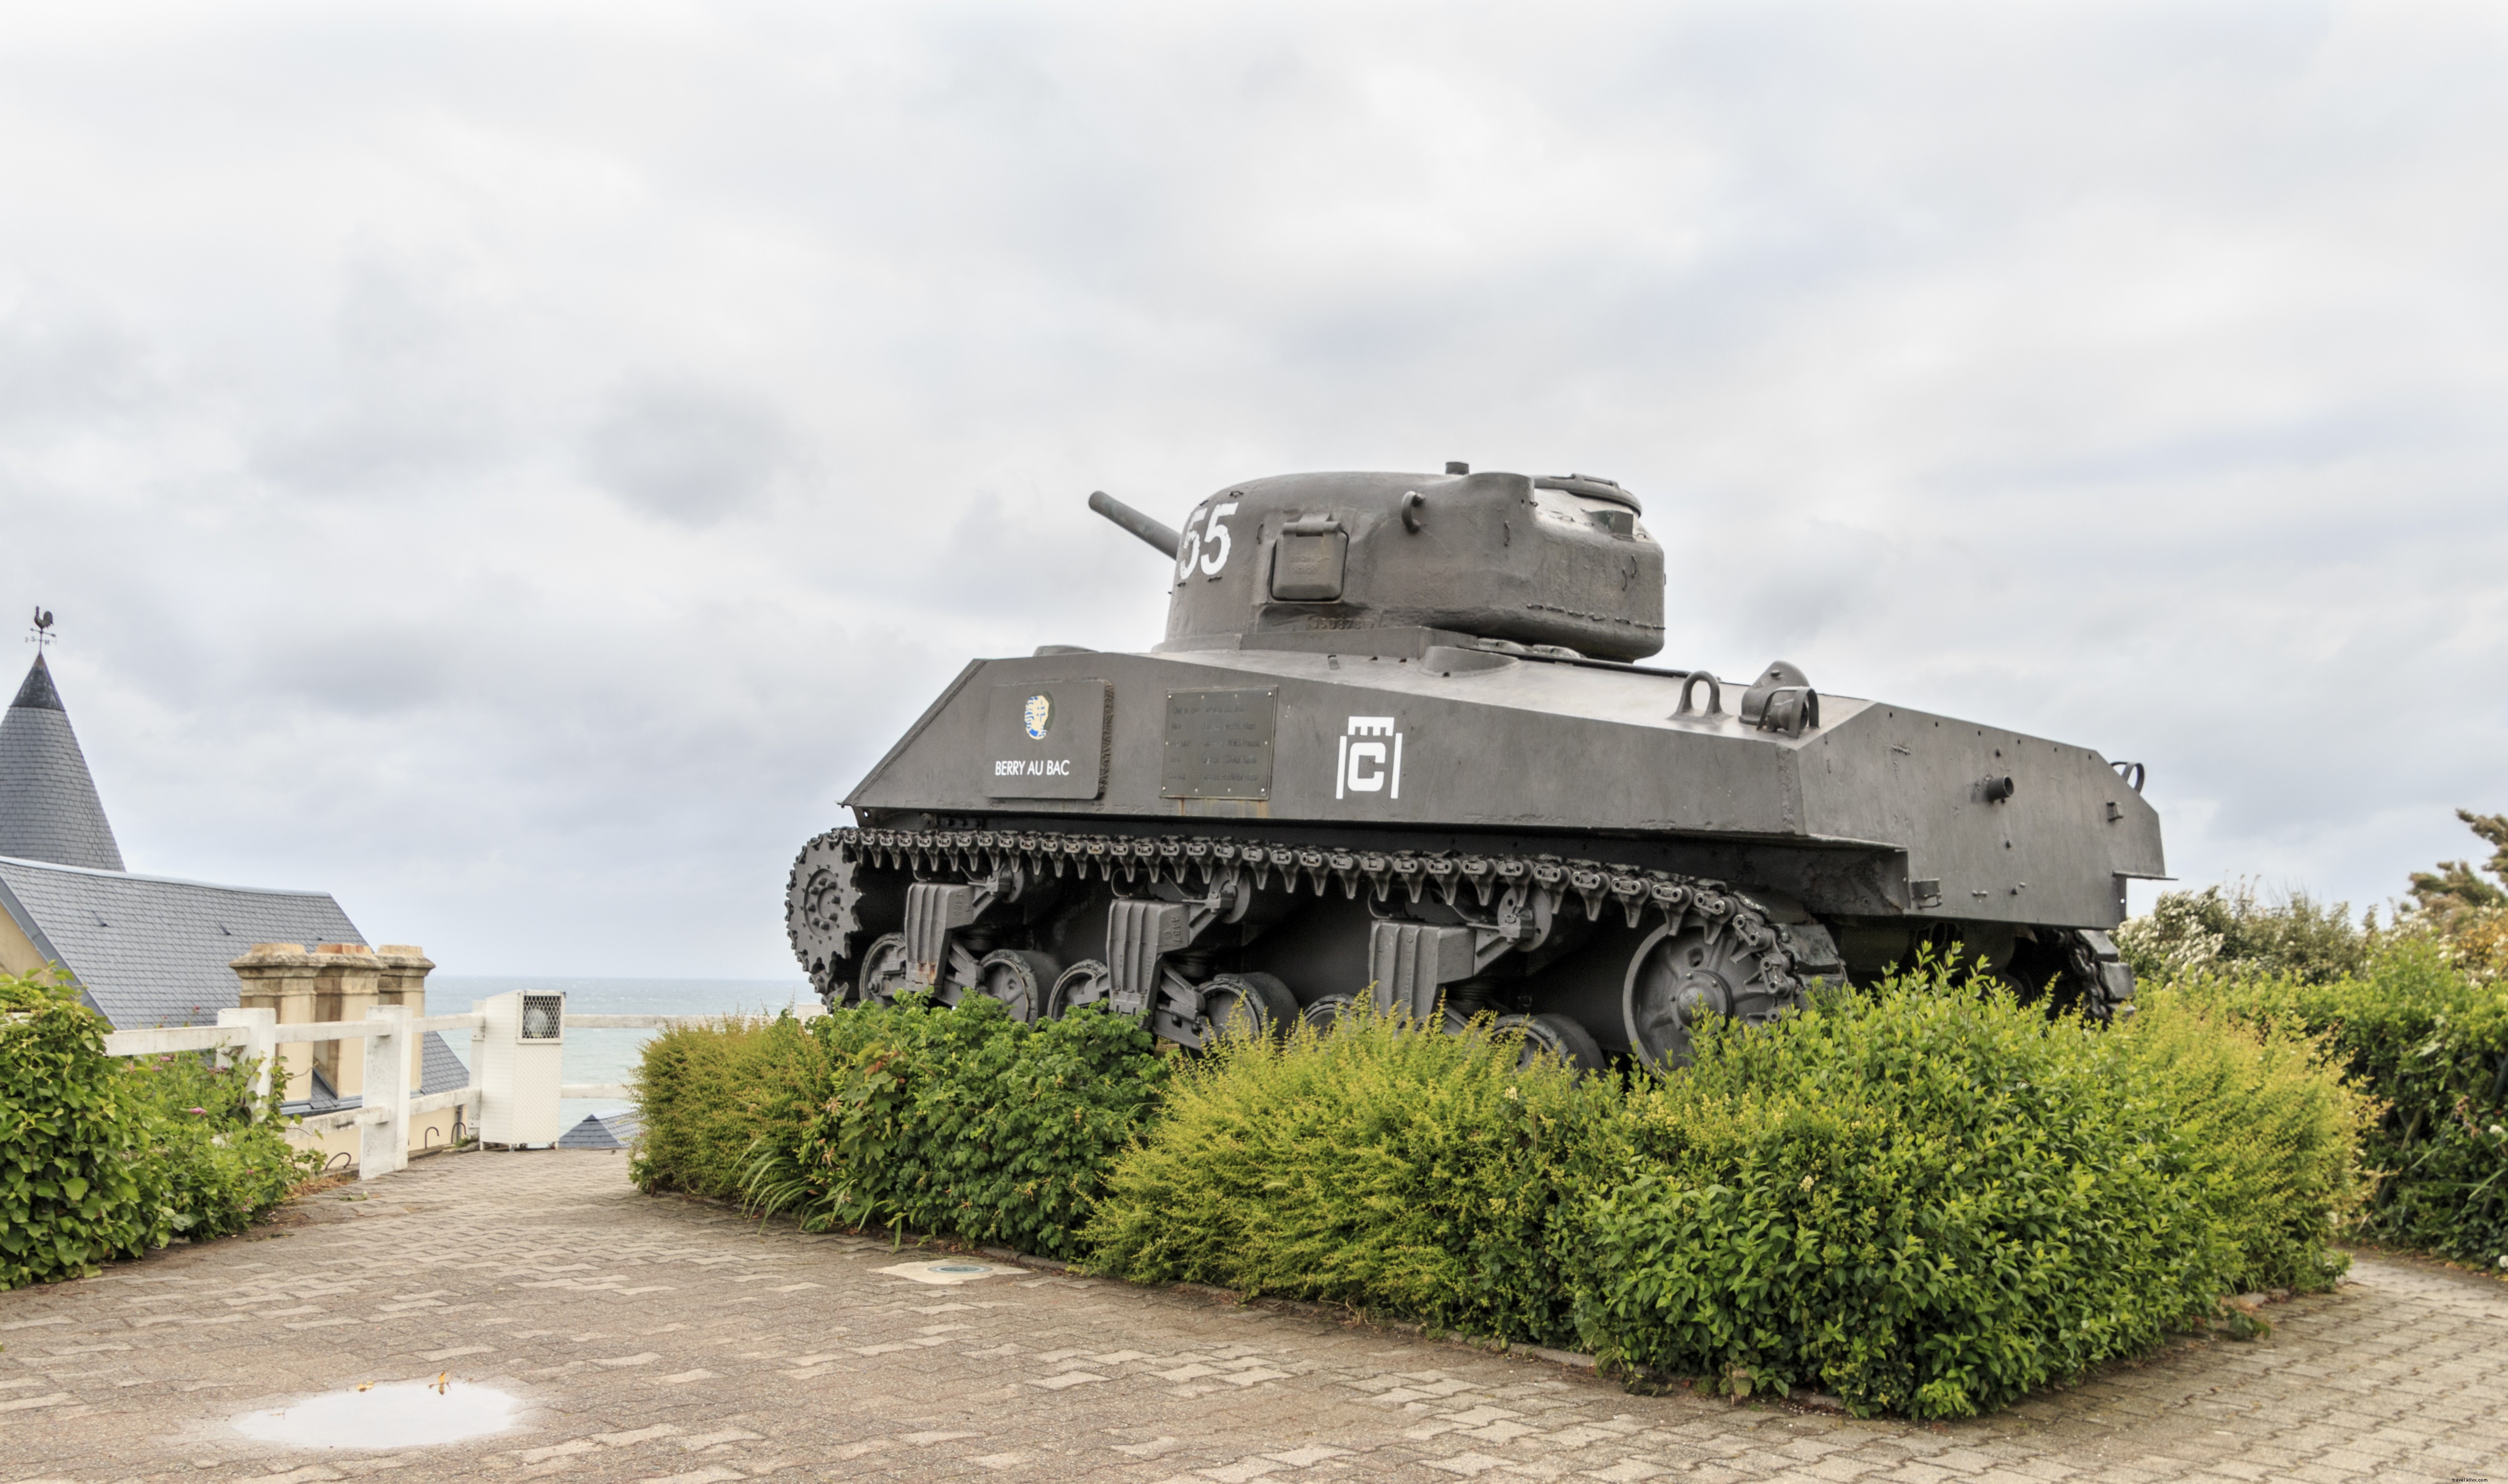 As praias do Dia D da Normandia:combinando história e beleza natural no oeste da França